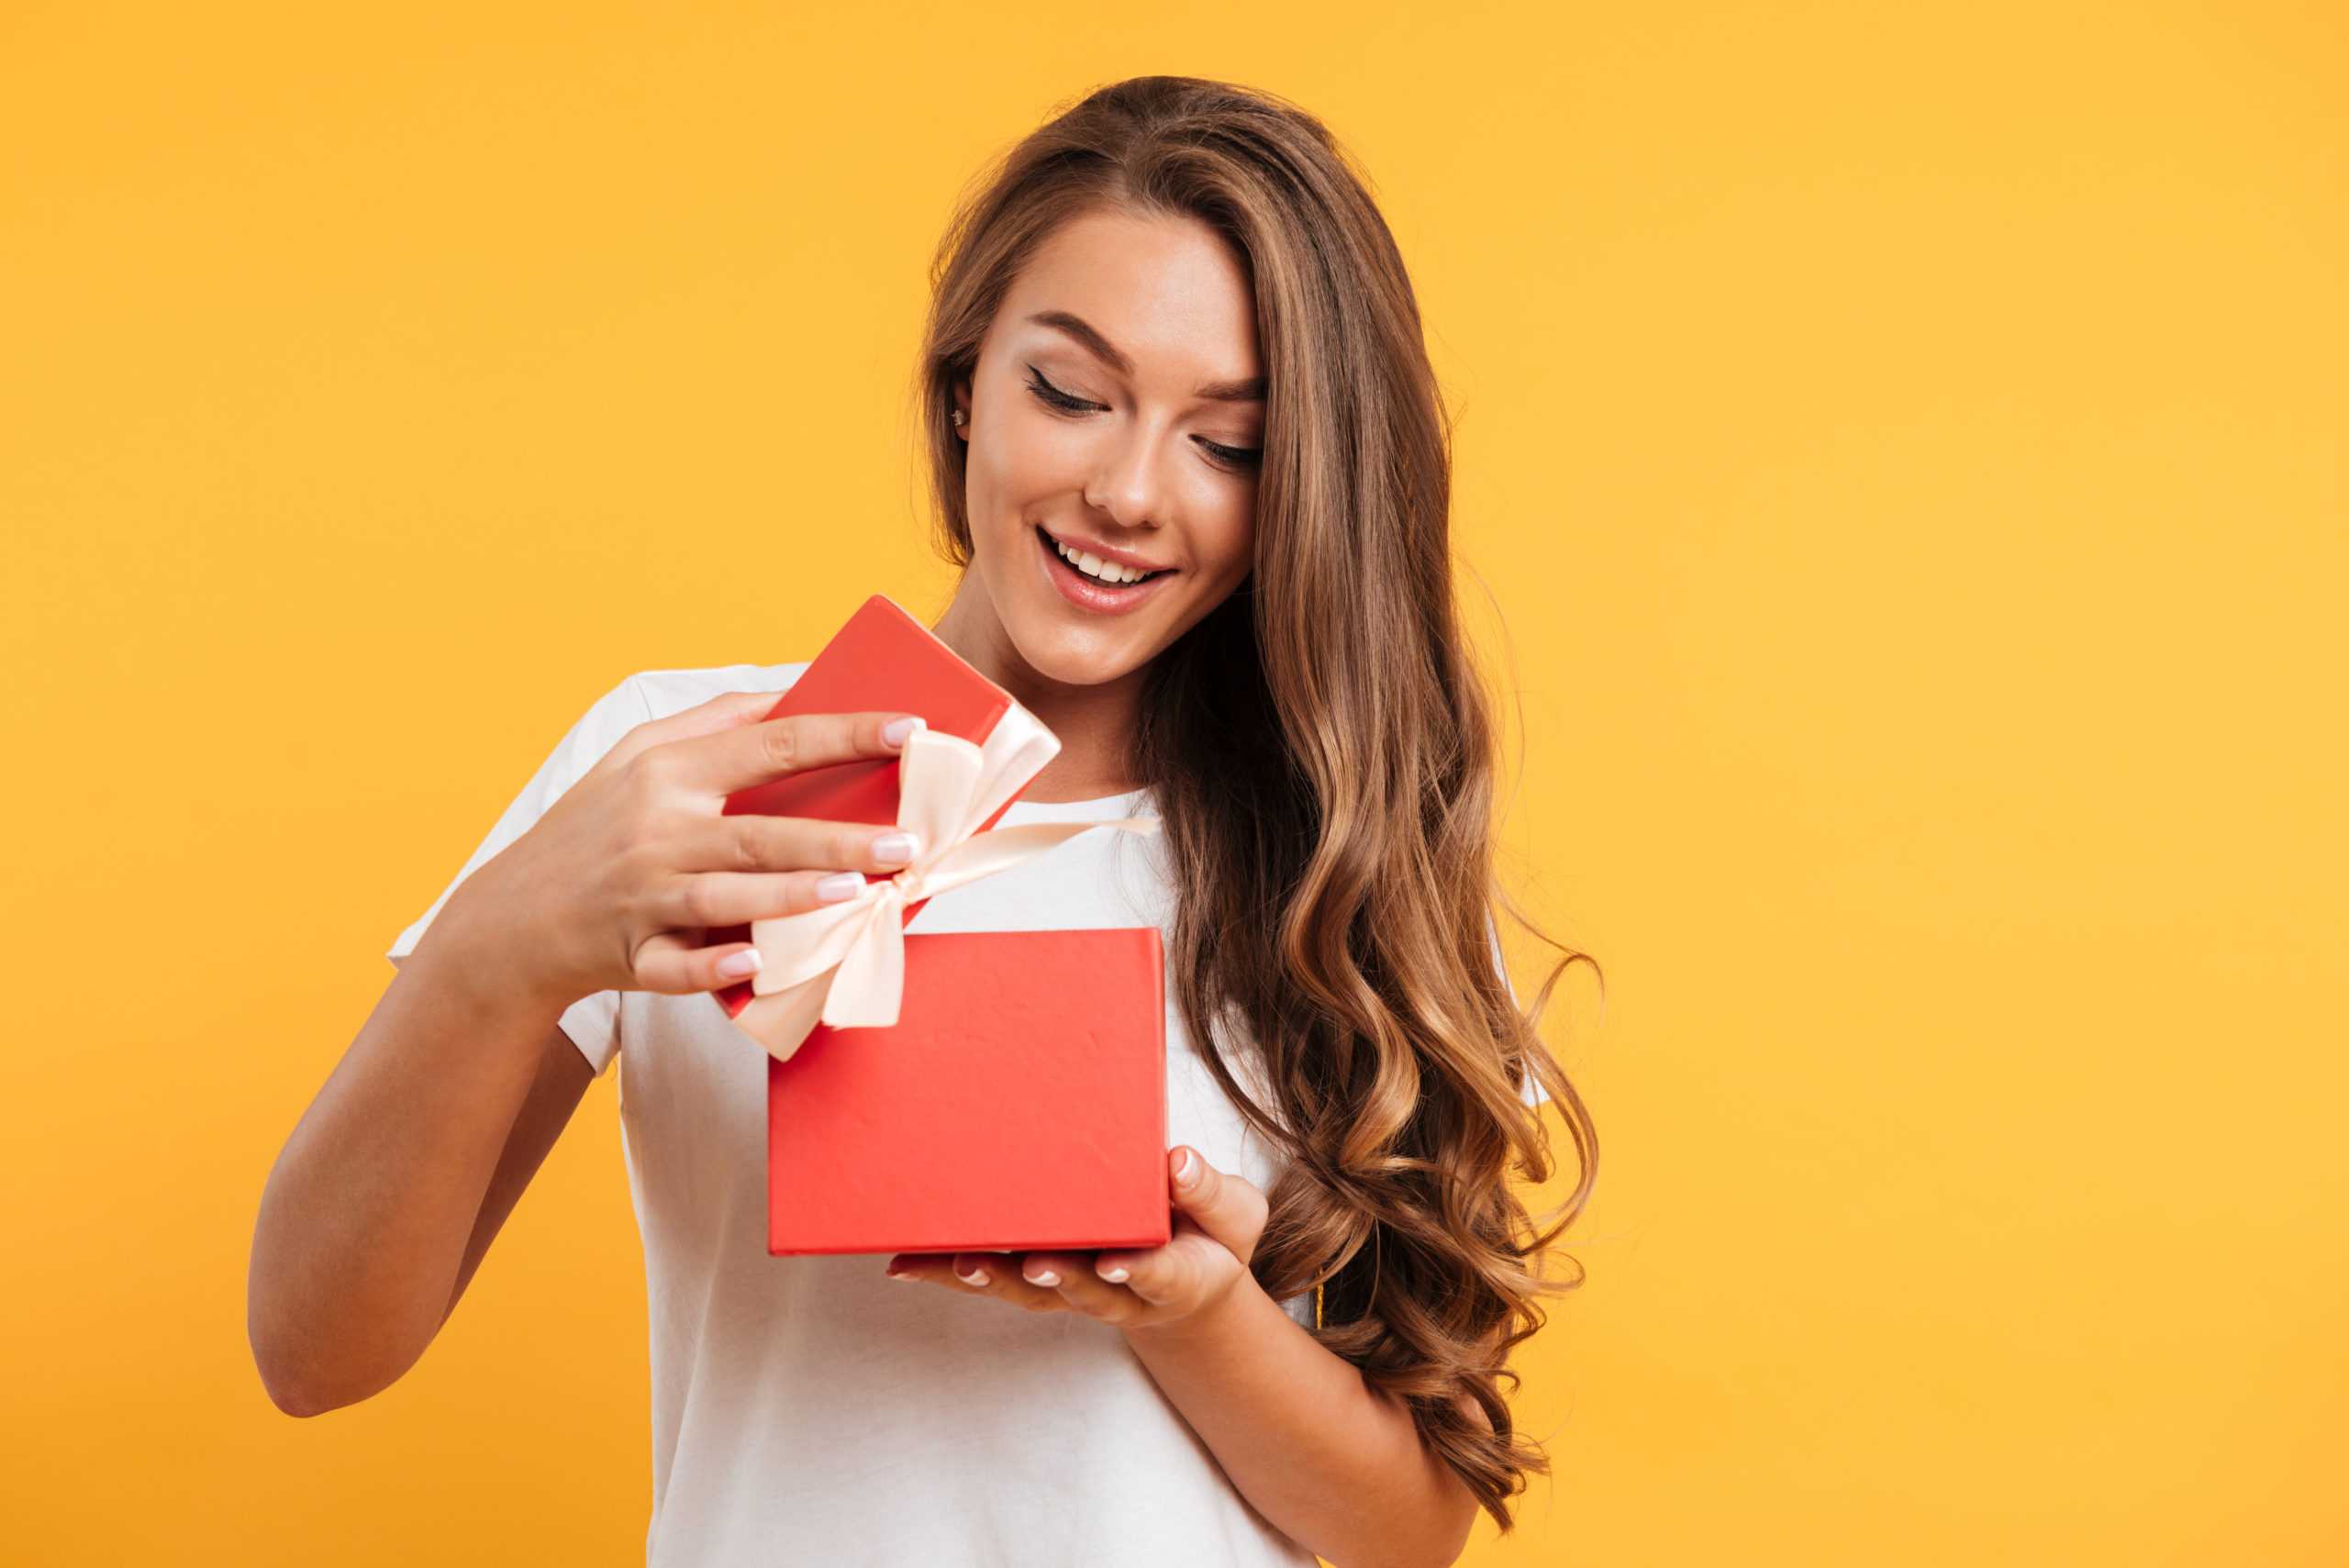 Любимая женщина получает приватные подарки -как мне поступить? вопрос психологу 26-10-2015